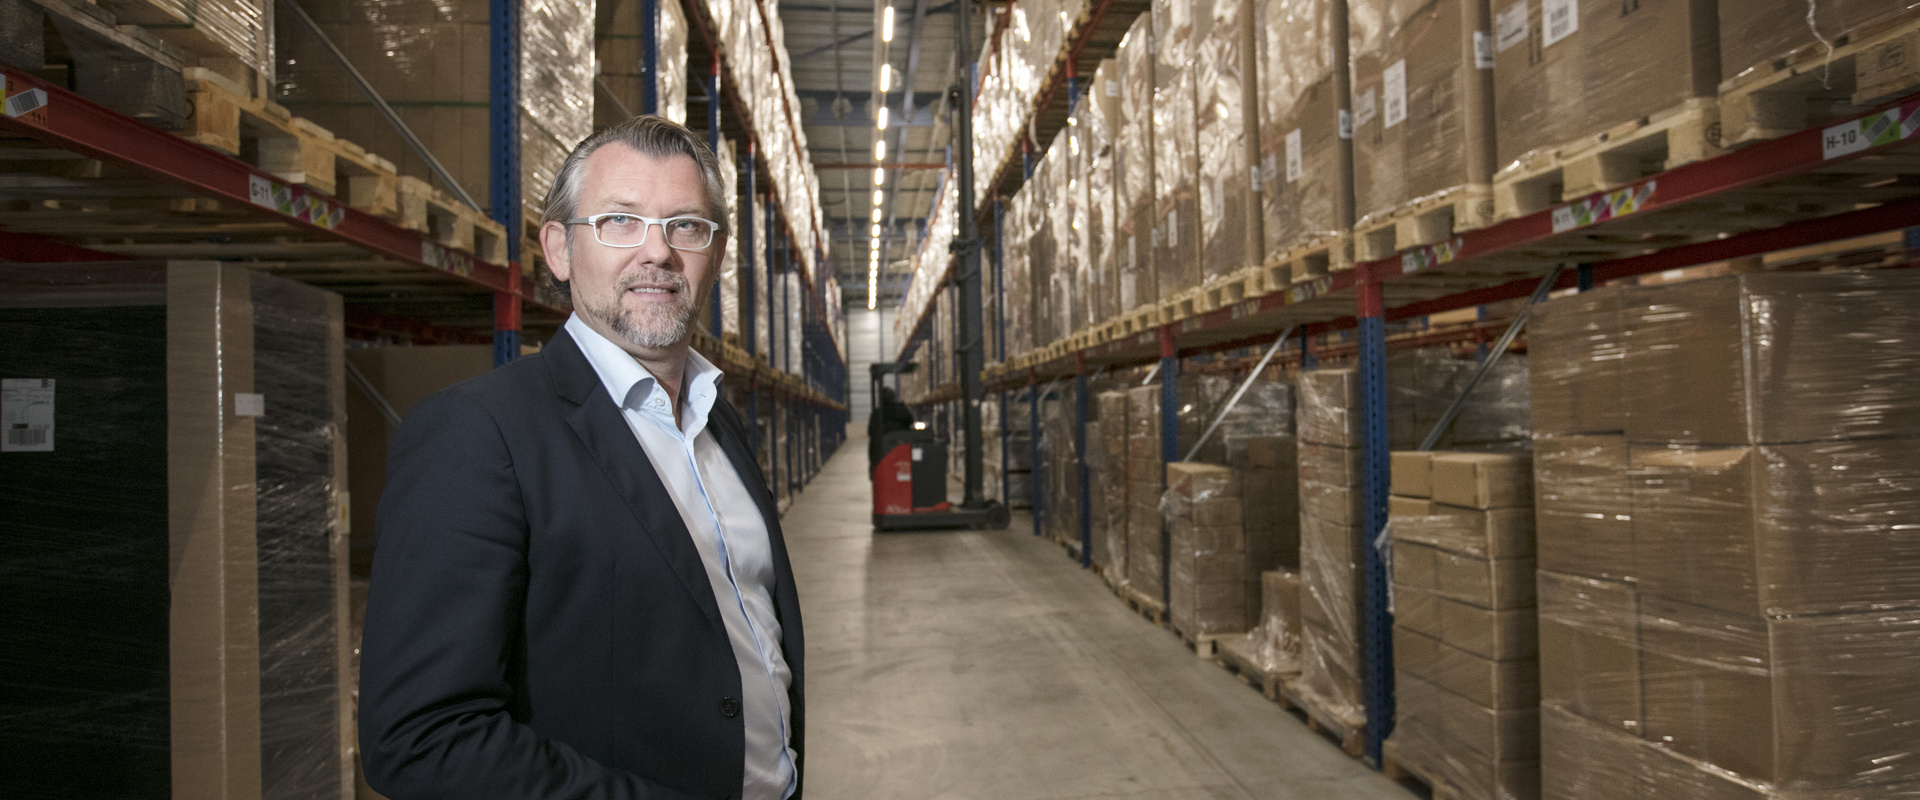 Frank Bruurs, directeur-eigenaar Spierings Logistics